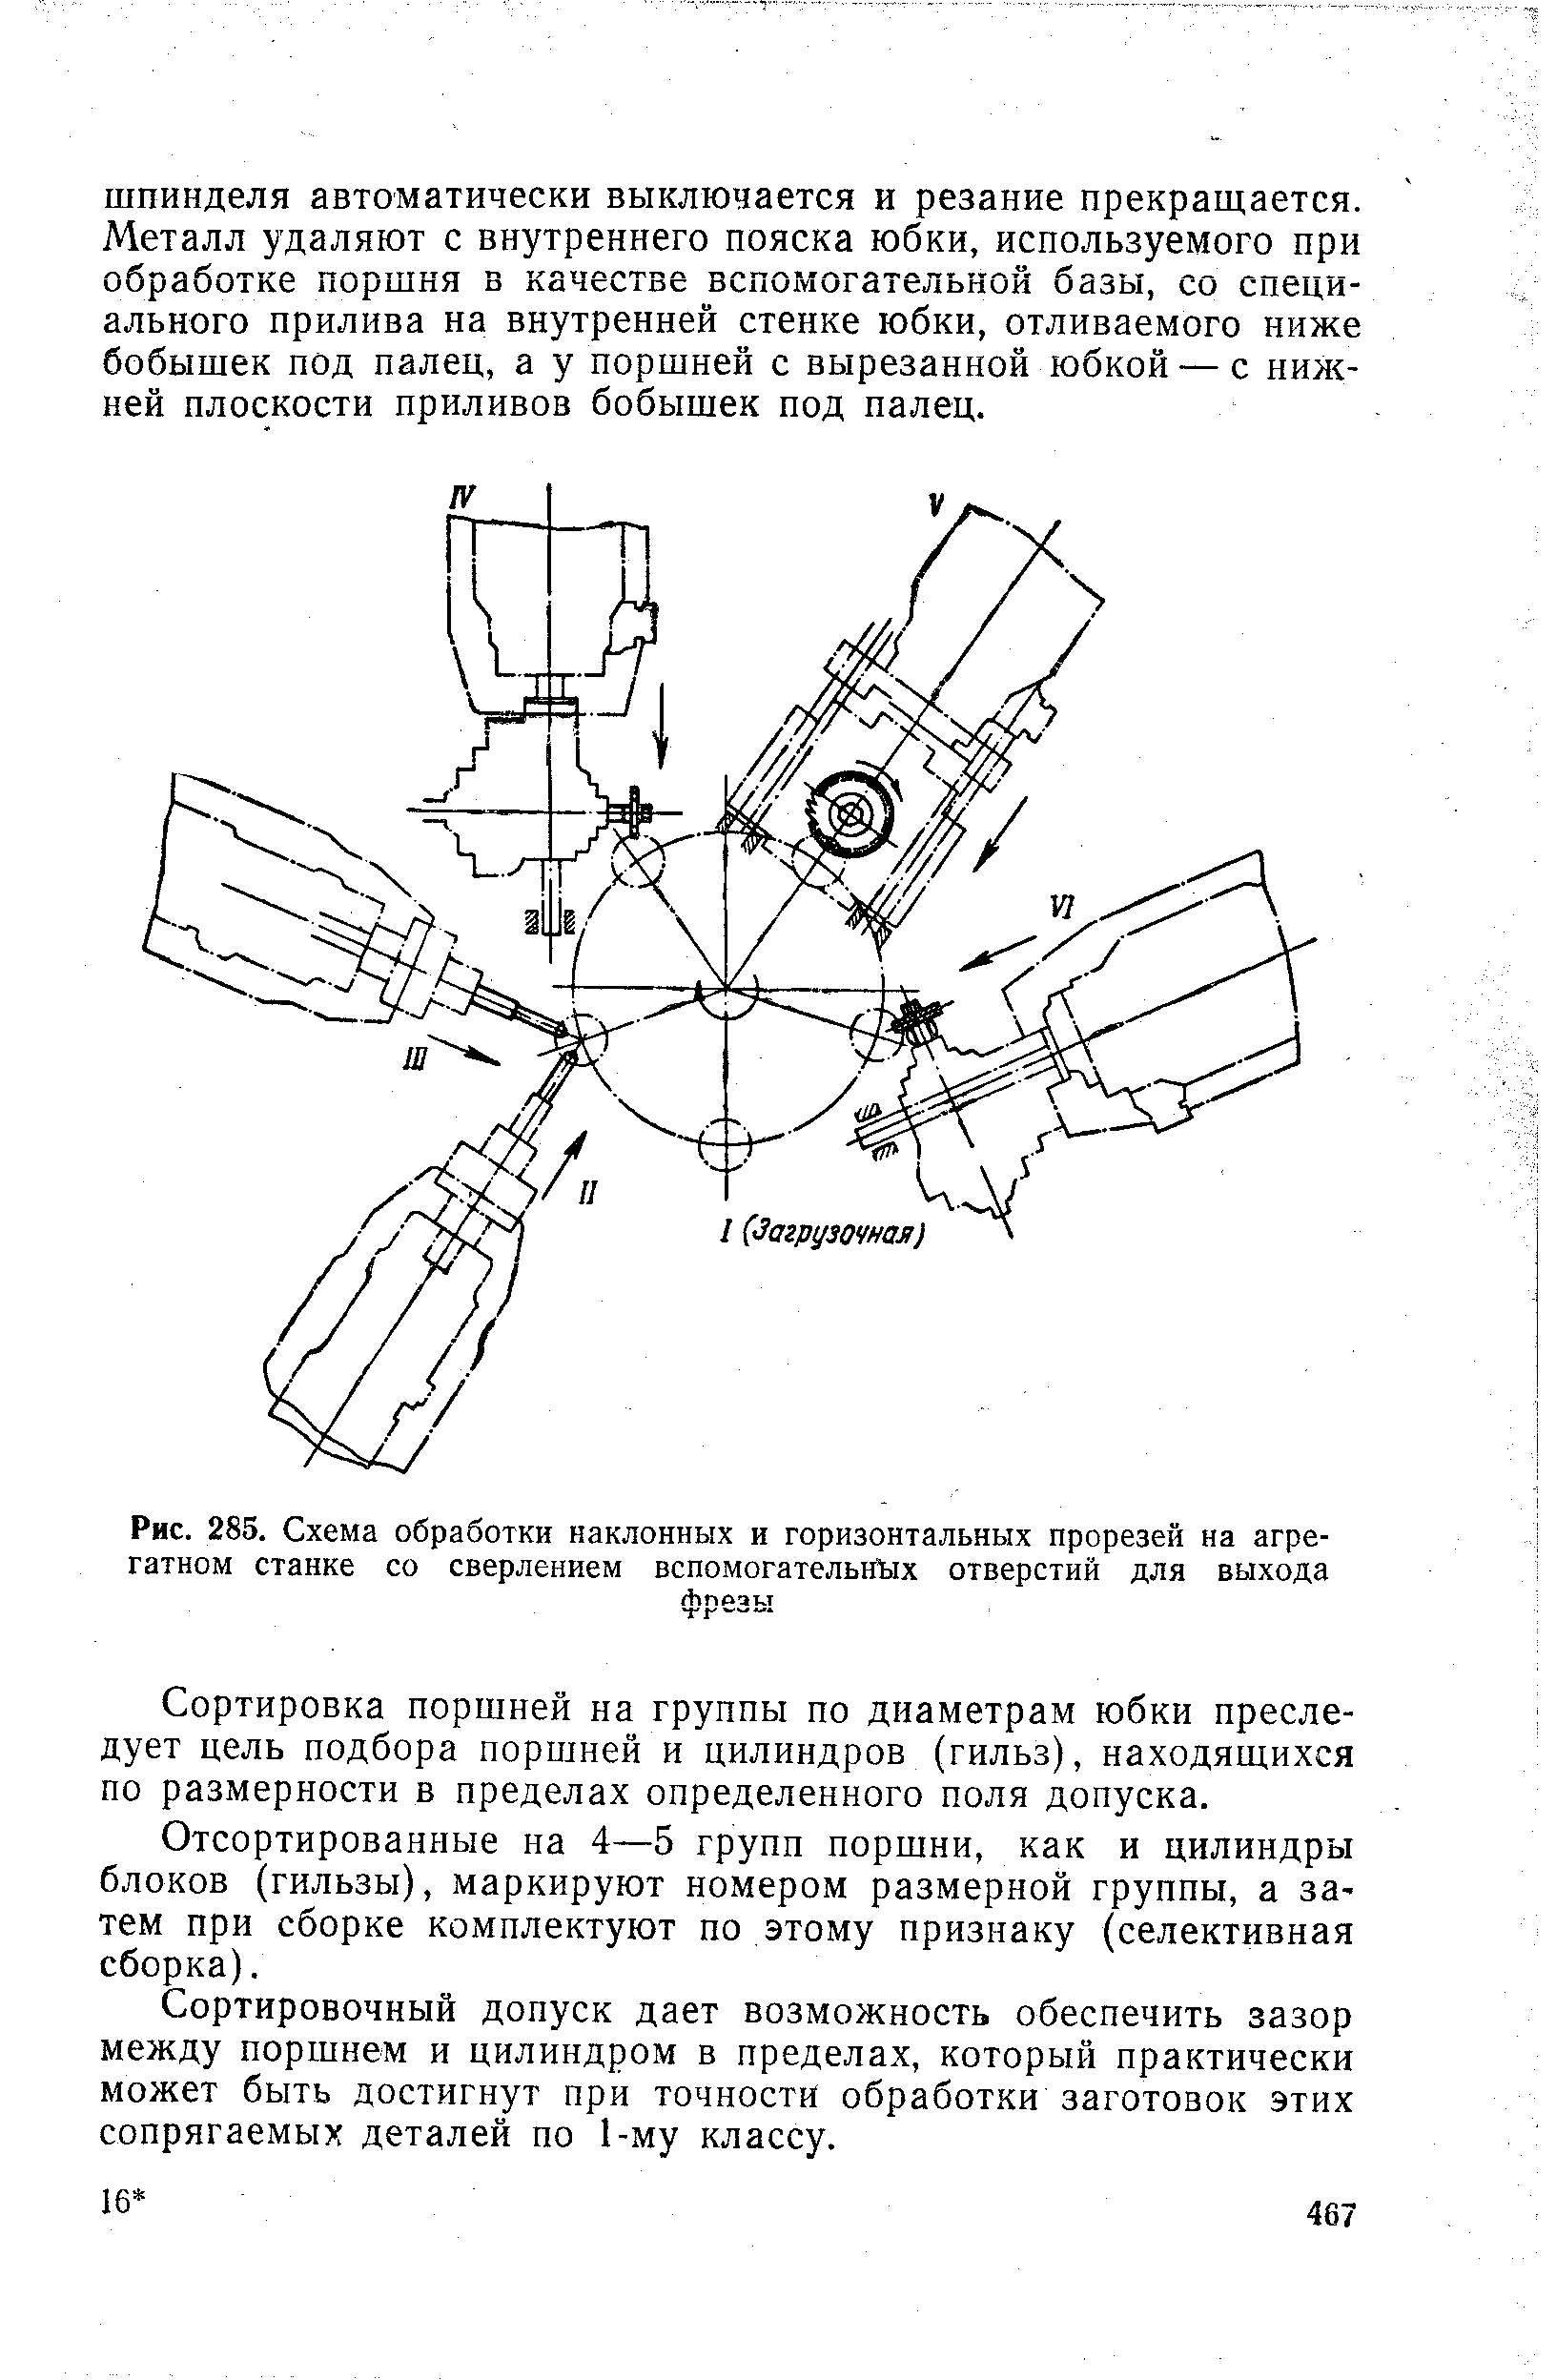 Рис. 285. Схема обработки наклонных и горизонтальных прорезей на агрегатном станке со сверлением вспомогательн Ых отверстий для выхода
